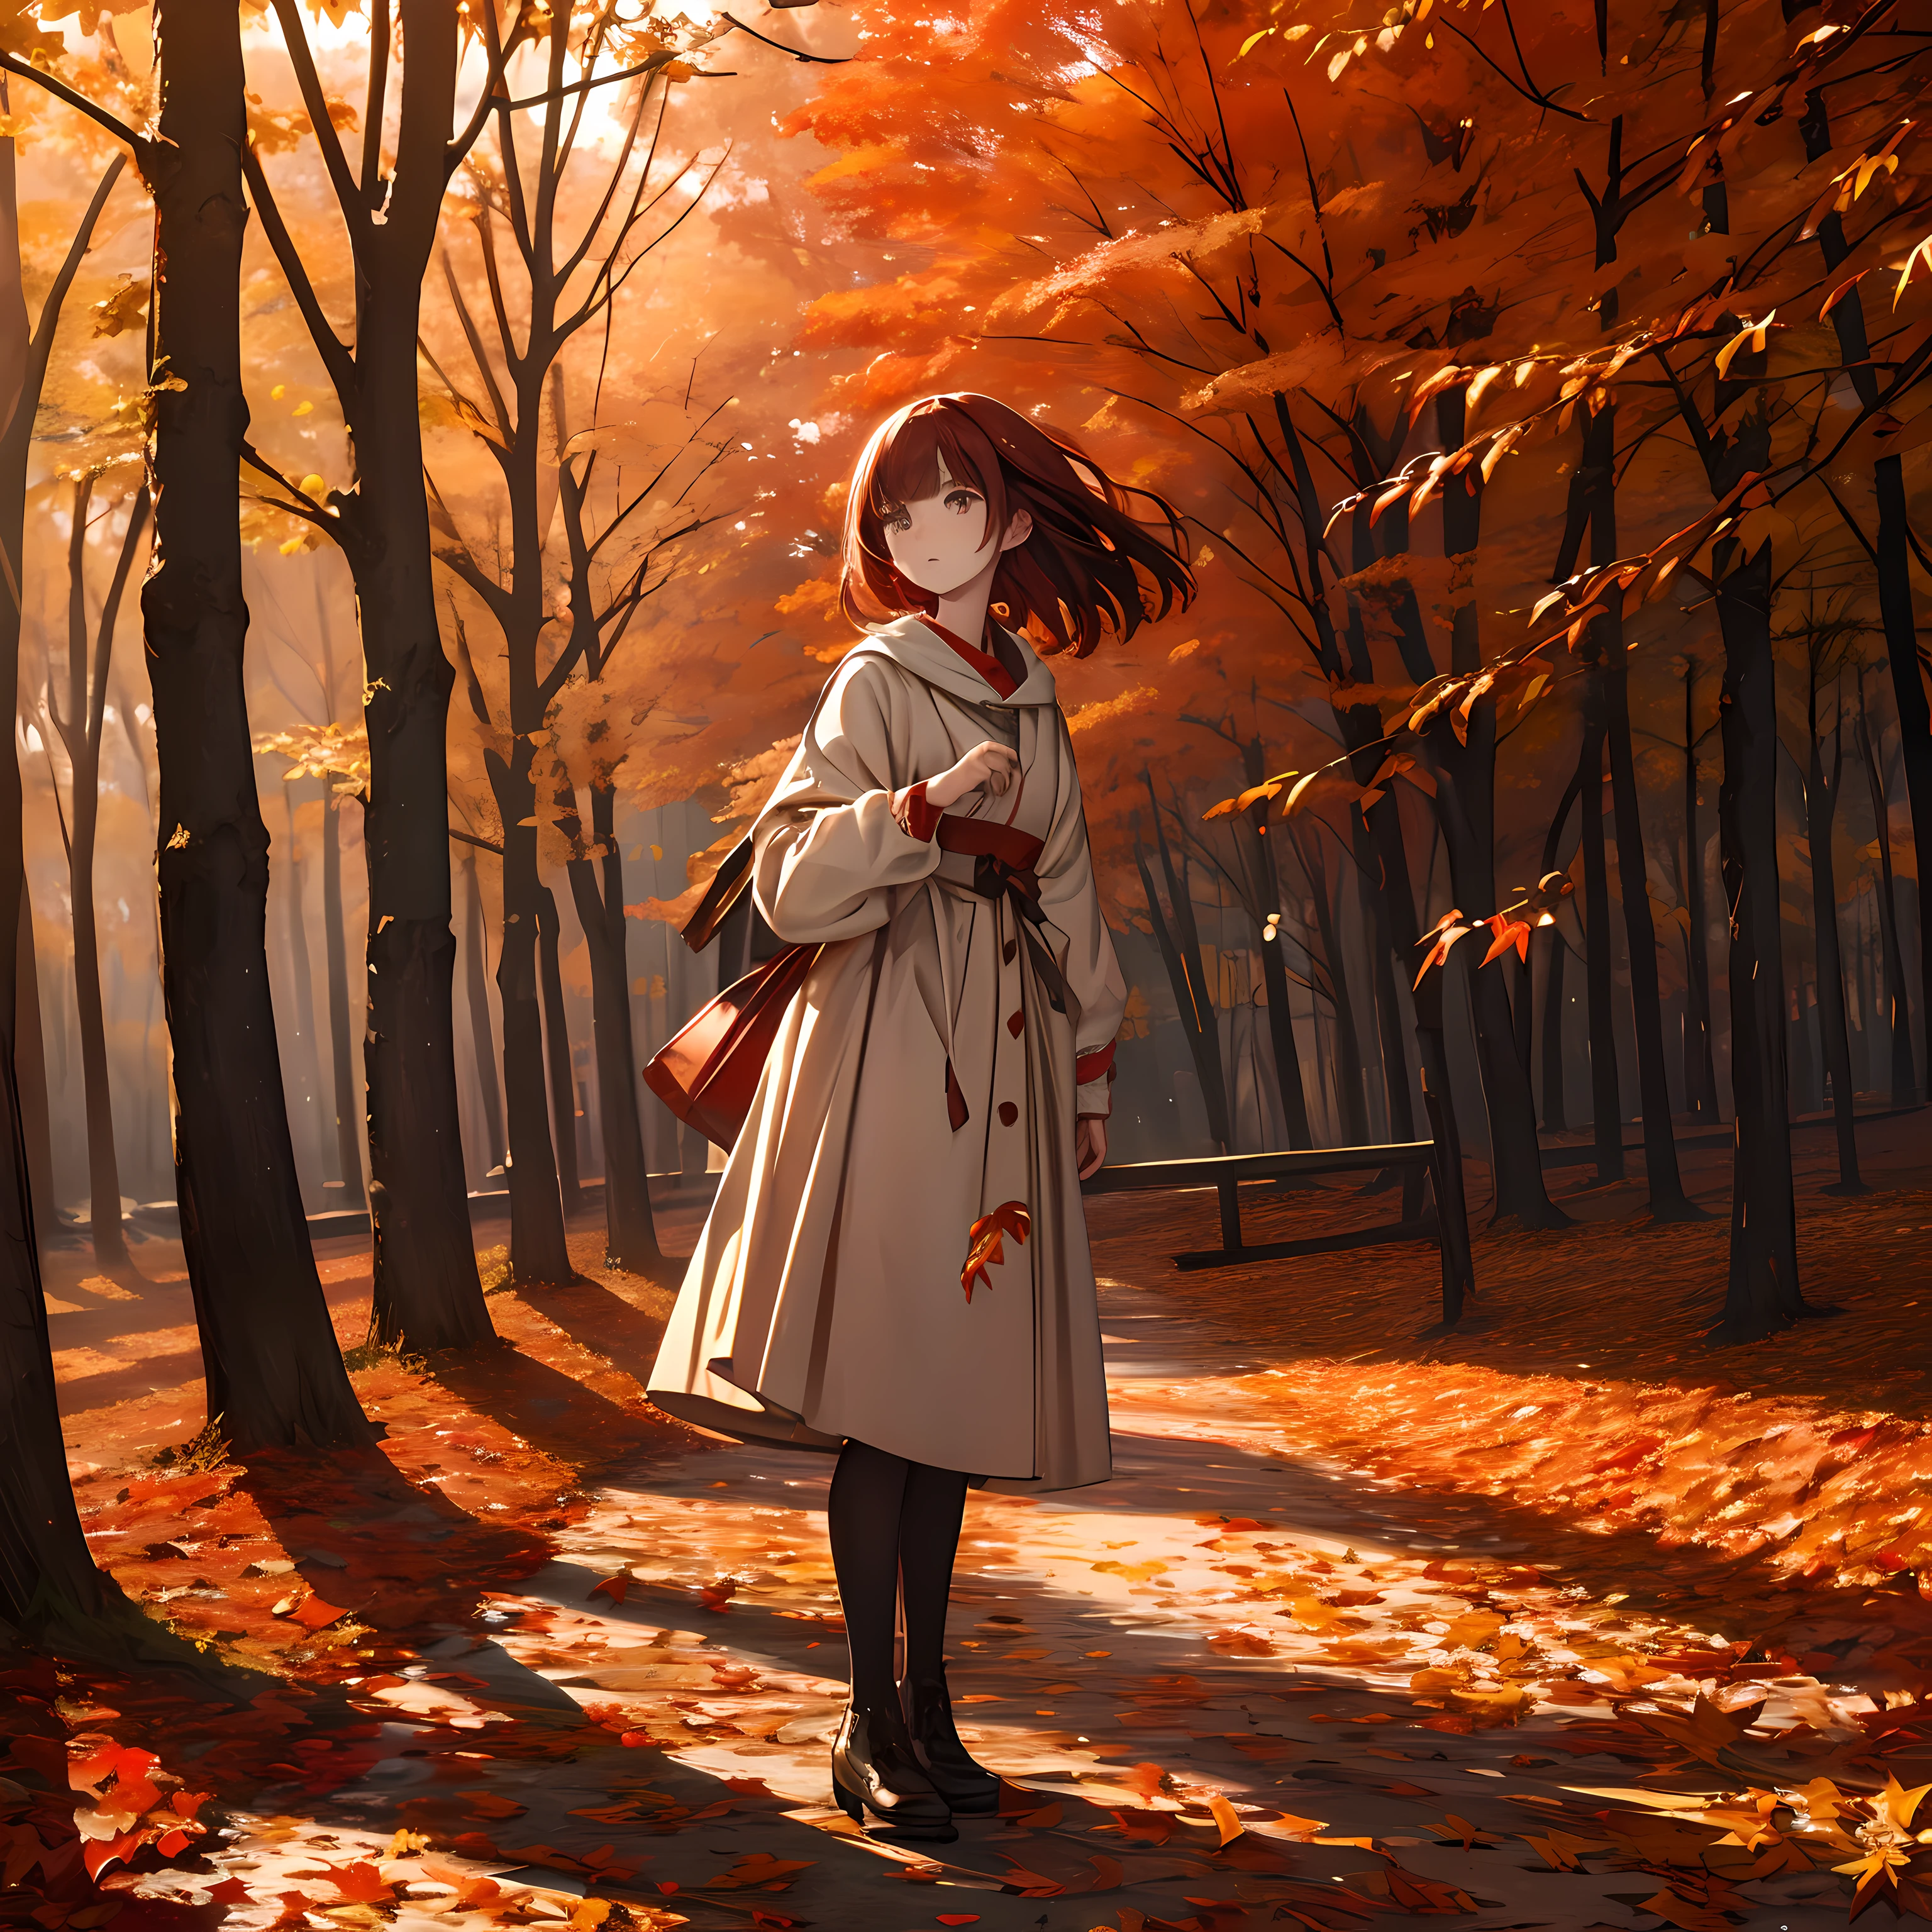 杰作, 高分辨率, 鲜红的秋叶在风中等待, 站立的女孩, 细腻细致的文笔.